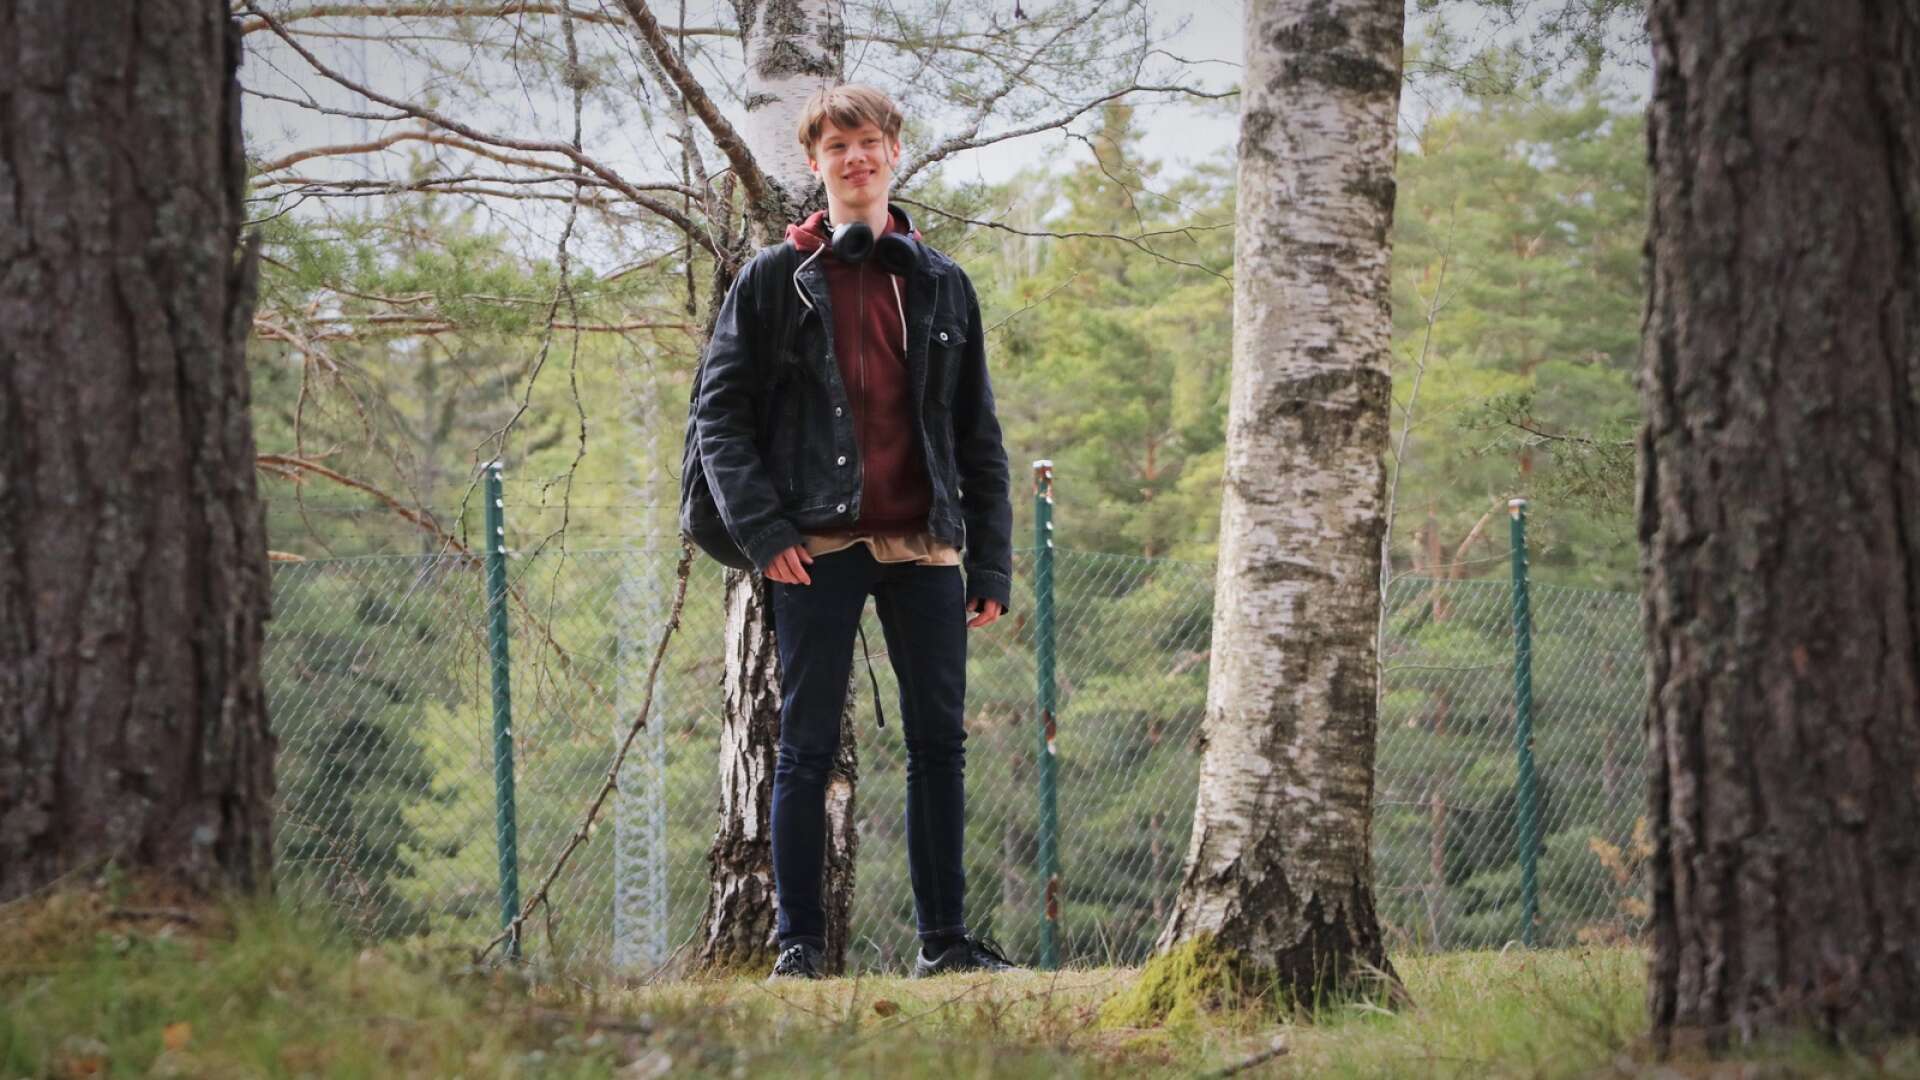 Elis Ekelund från Fengersfors har fått sin första filmroll. Under sportlovet 2021 var han i Skåne och spelade in kortfilmen ”No Future”, där han spelar en av rollerna i ett ungdomsgäng. Under lördagen har filmen premiär på en filmfestival i Malmö. 